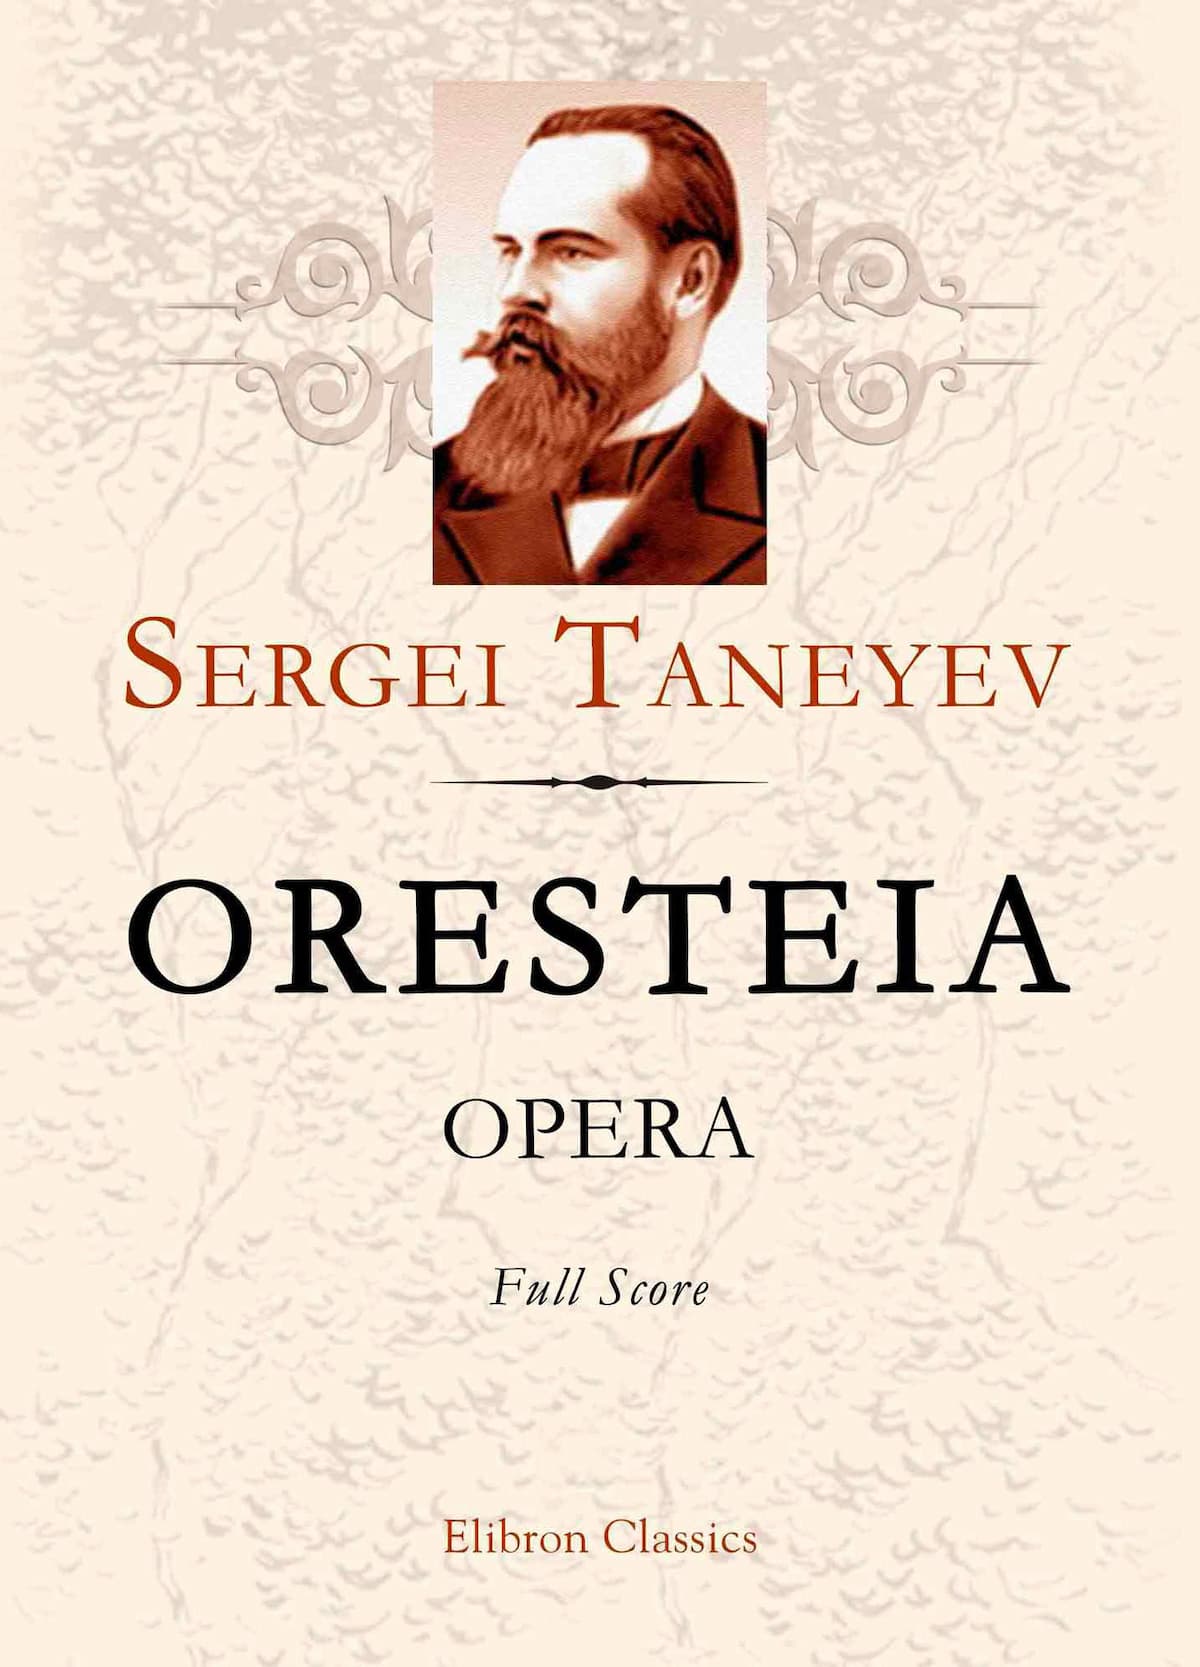 Sergei Taneyev's opera Oresteia